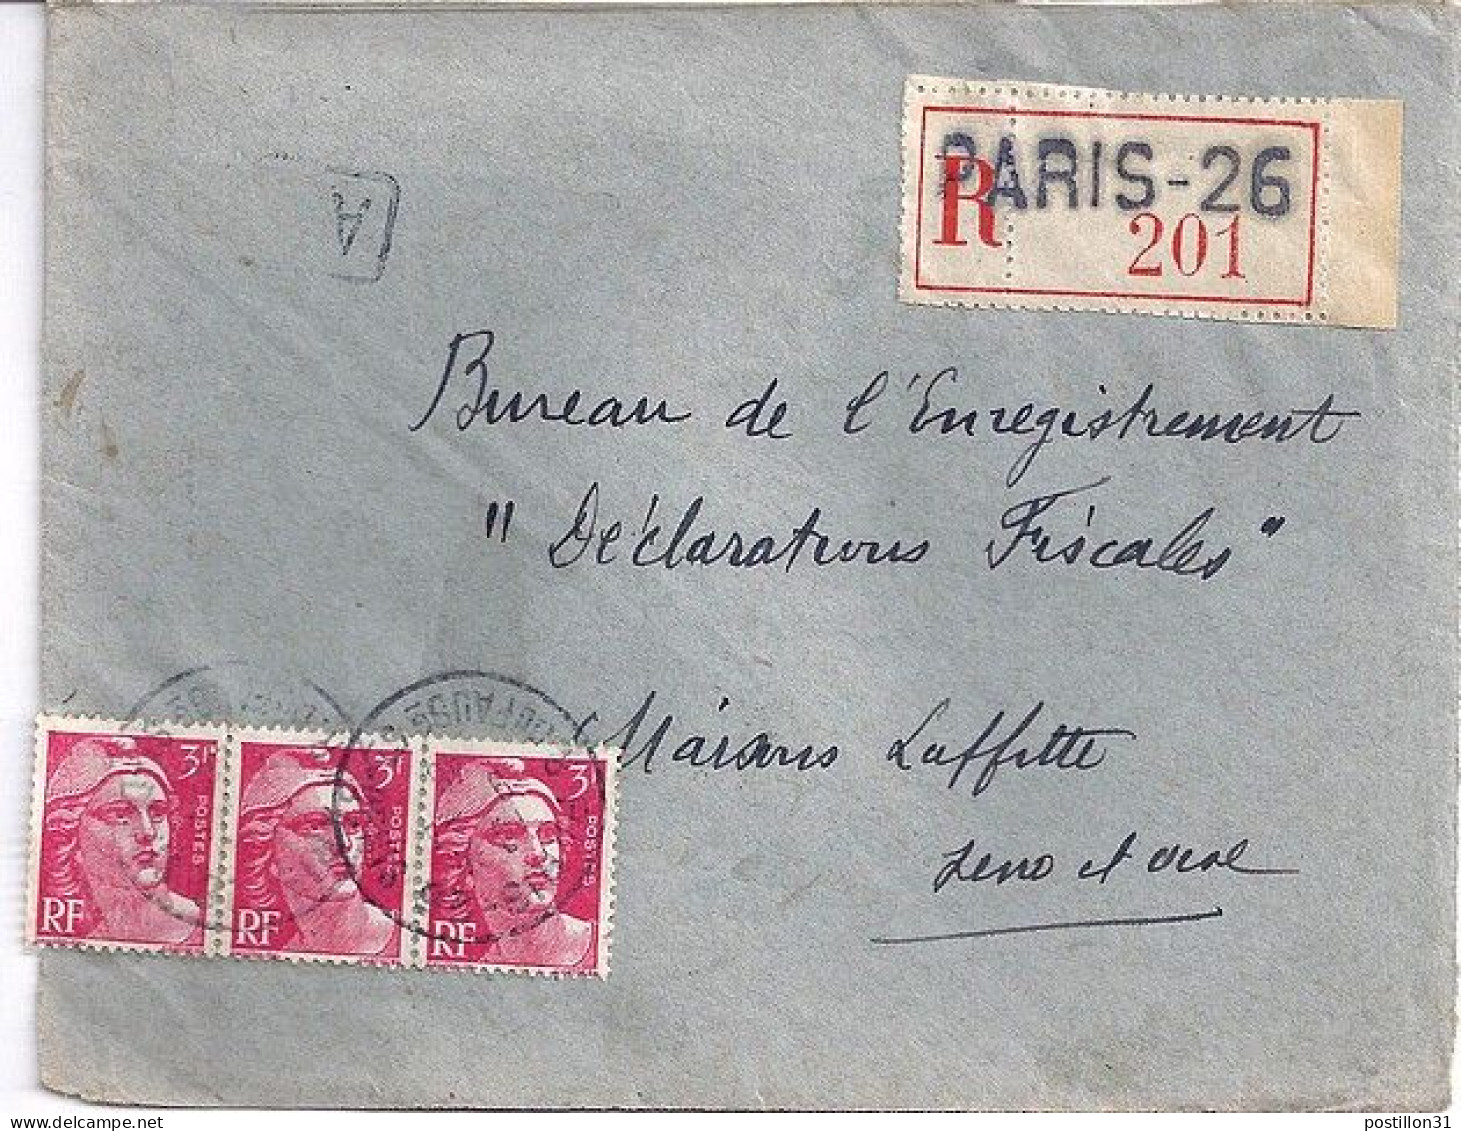 GANDON N° 716x3 S/DEVANT DE L.REC. DE PARIS 26 / 9.4.46 - 1945-54 Marianne Of Gandon